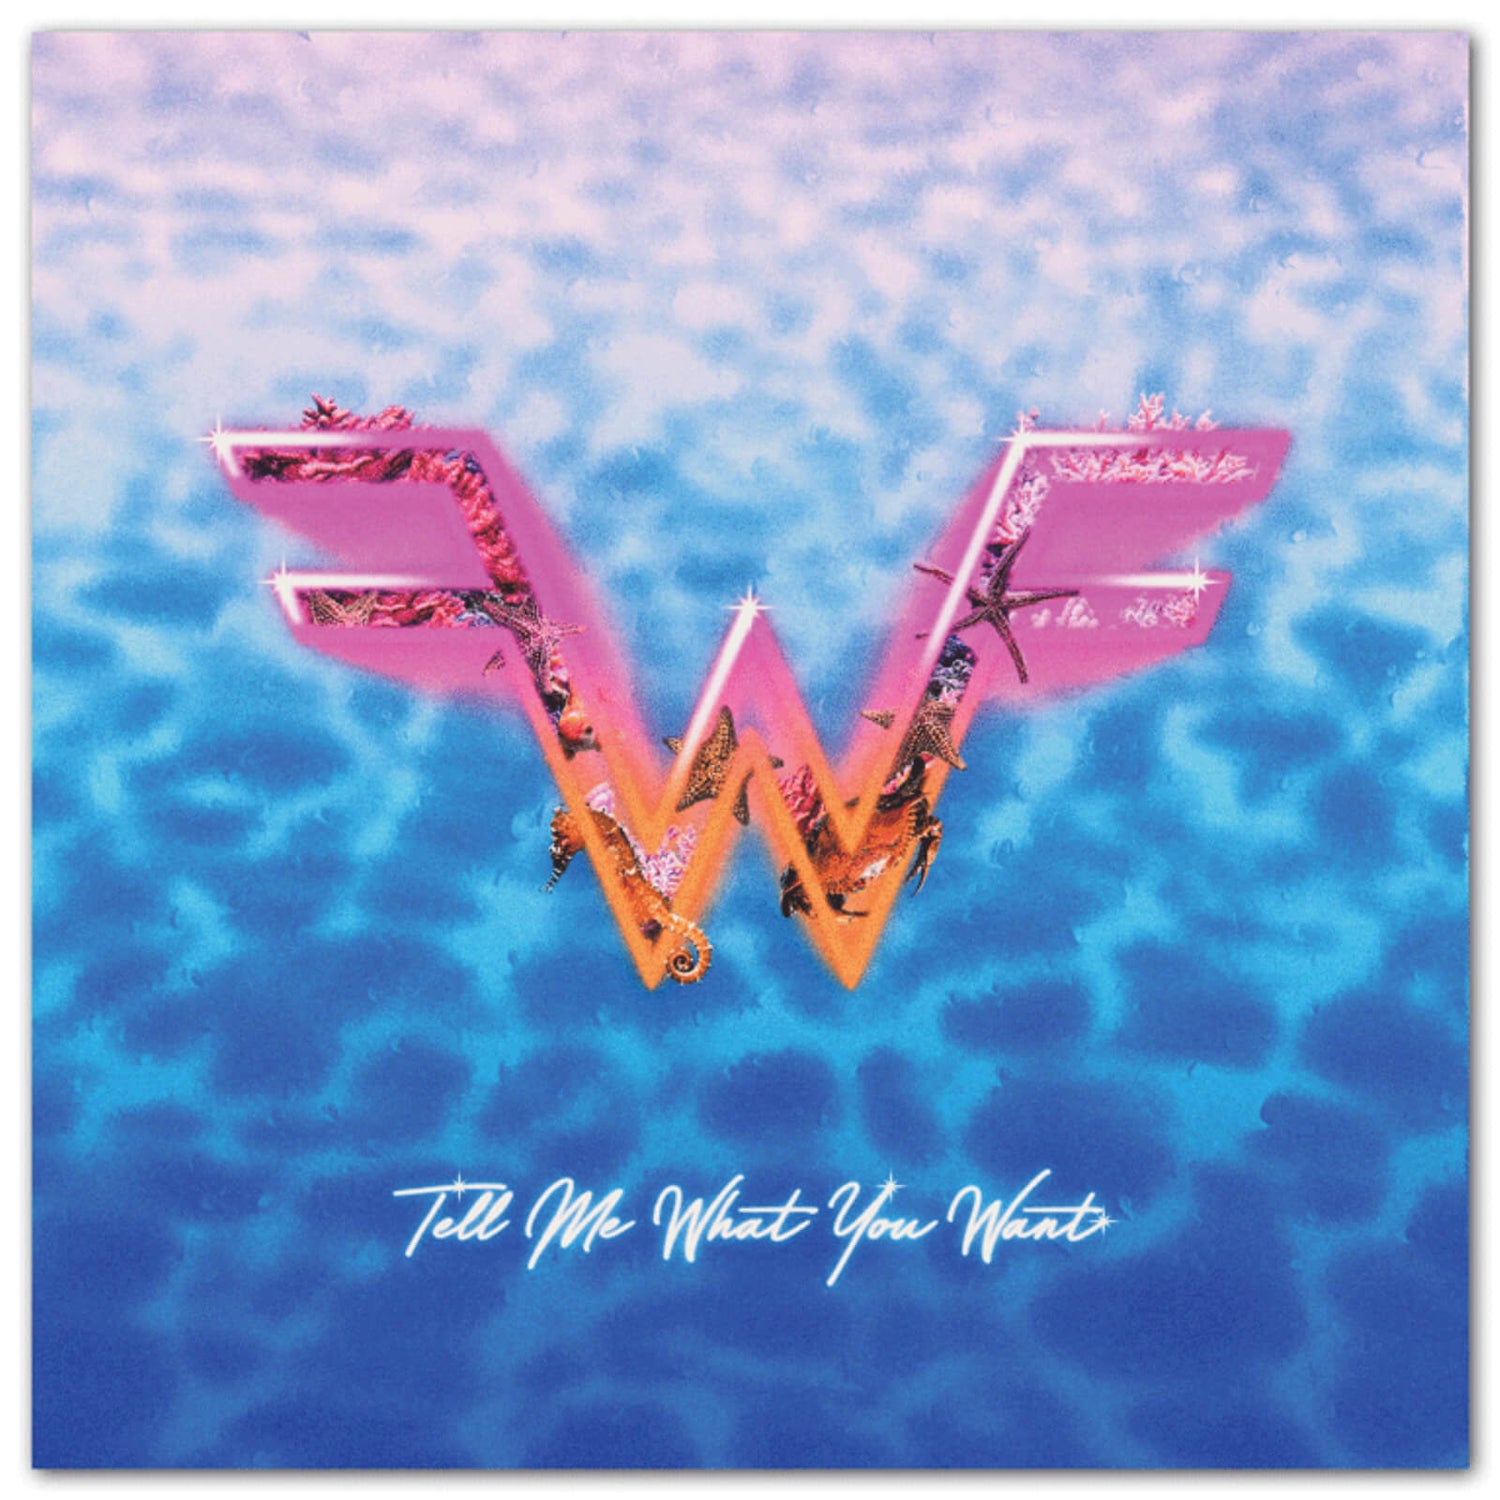 iam8bit - Weezer X Wave Break 7" (Melted Popsicle)